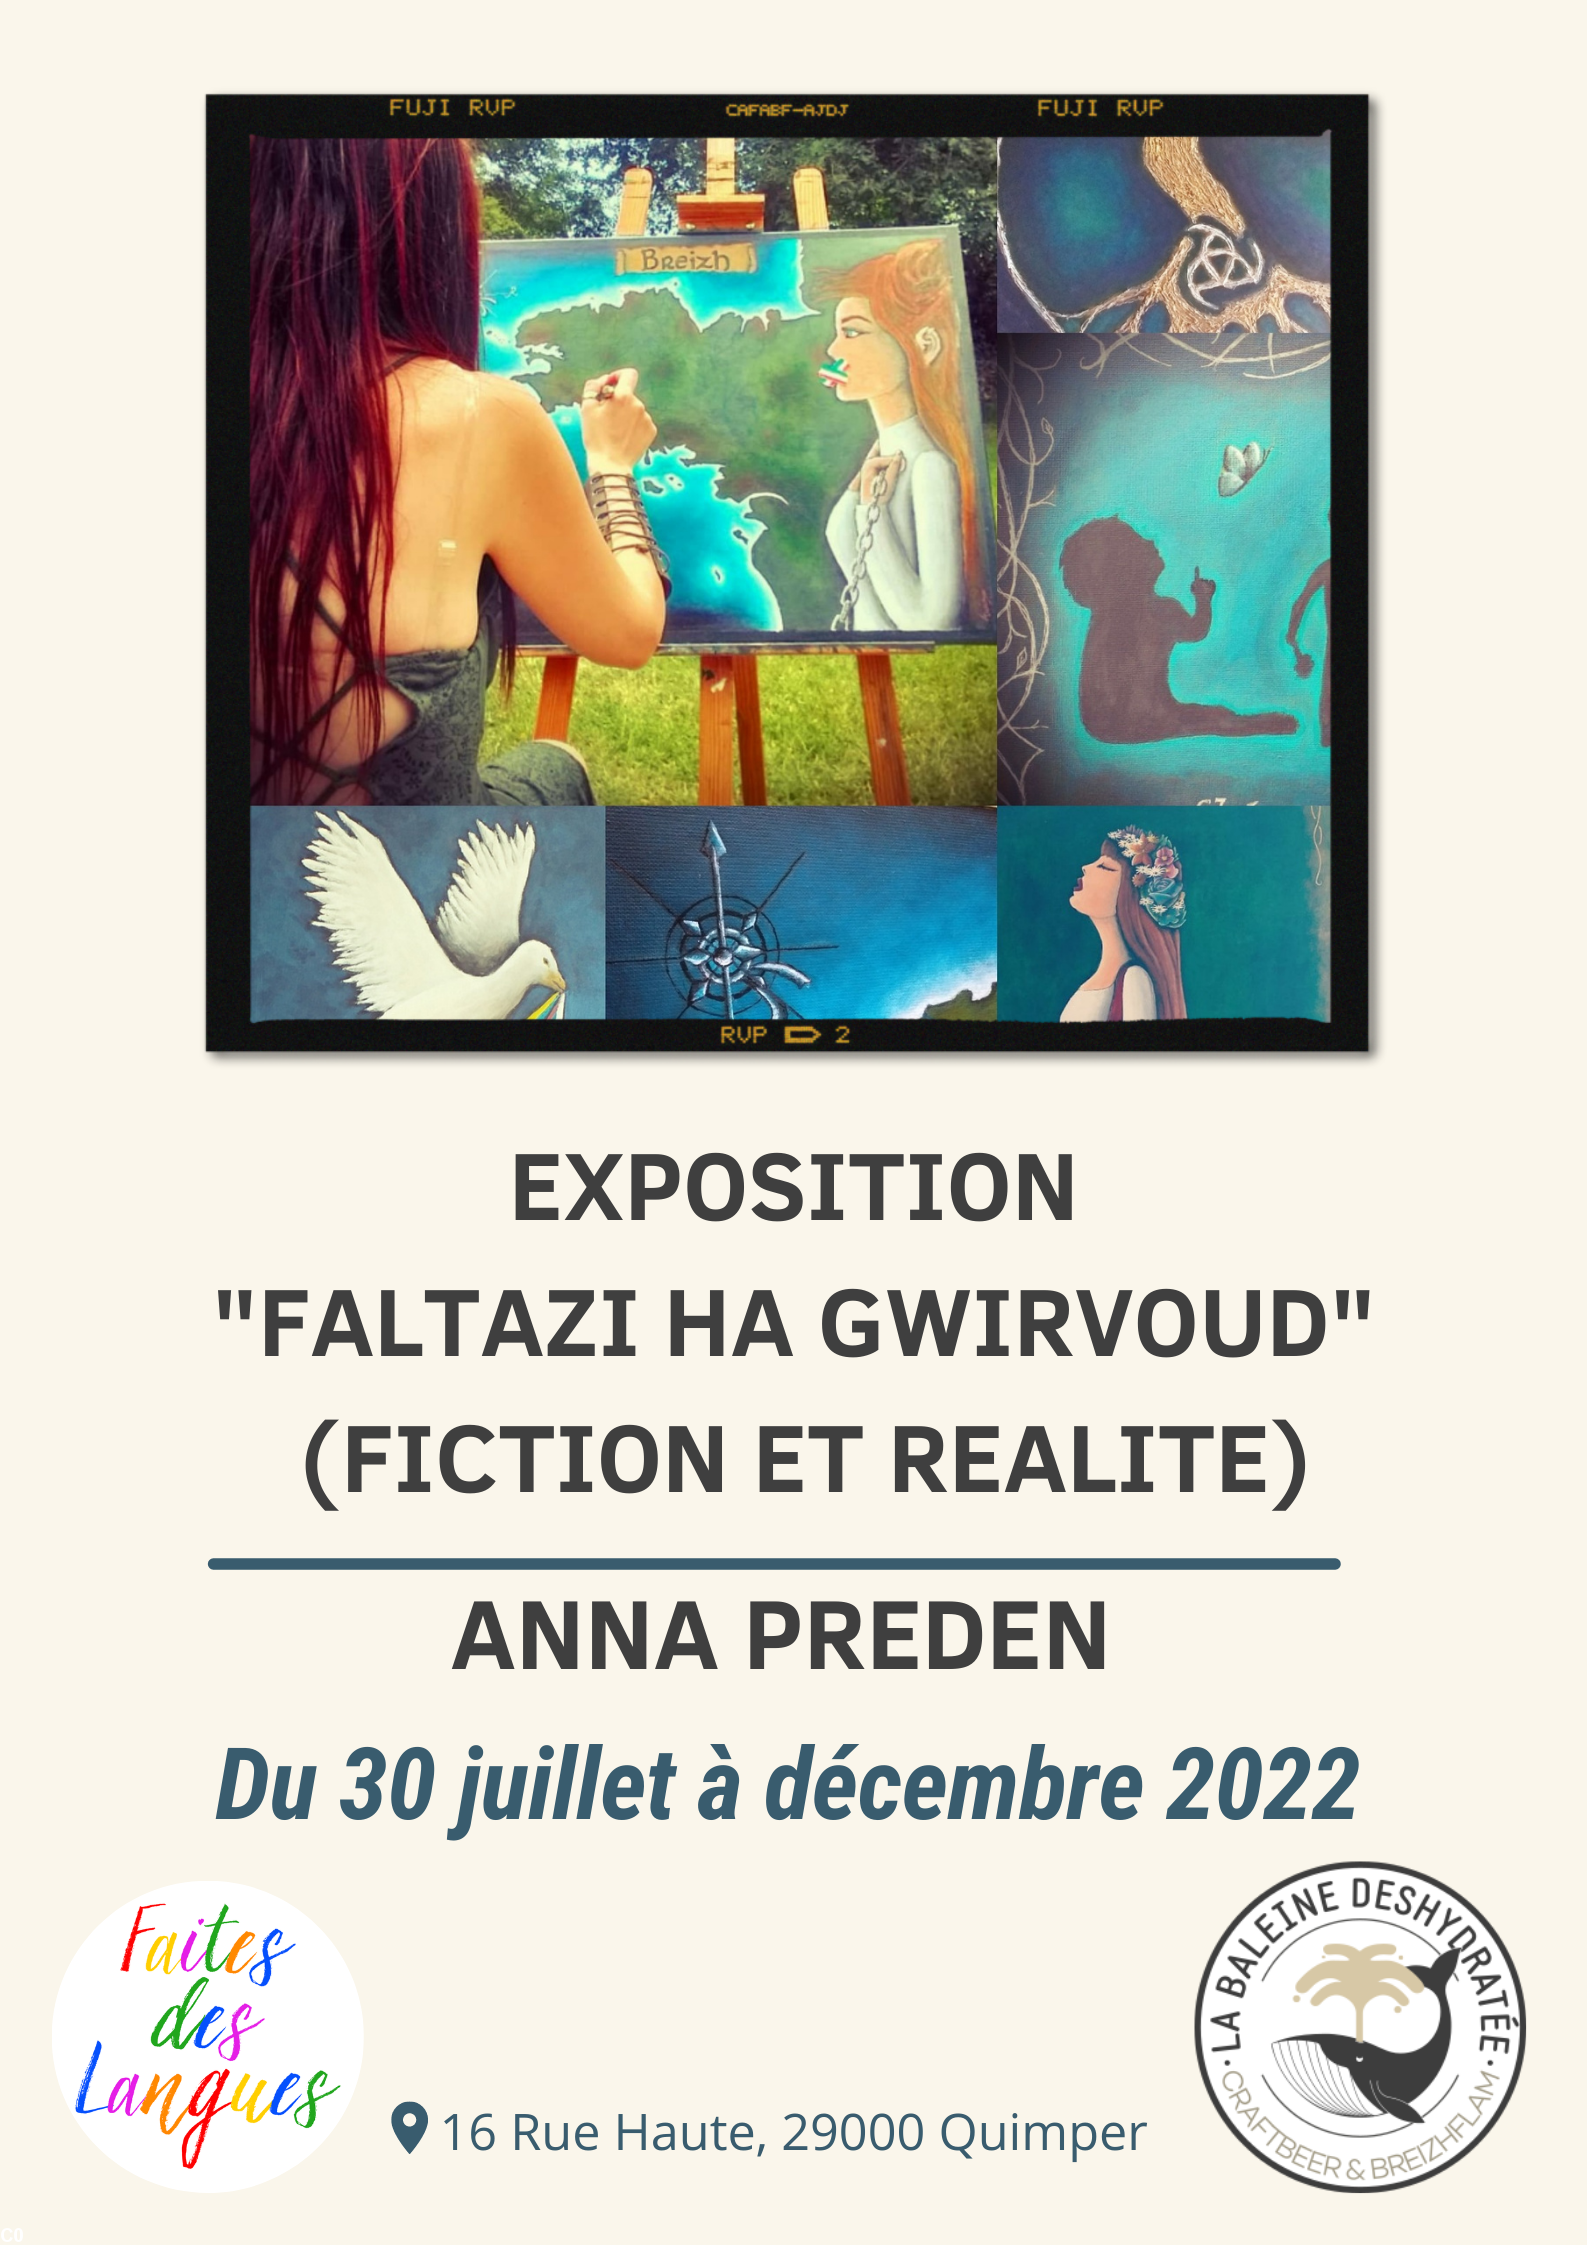 Exposition de peintures réalisées par l'artiste bretonnante Anna Preden de juillet à décembre 2022: citations en langue bretonne sur des tableaux de style fantastique, traduits en français et en anglais.